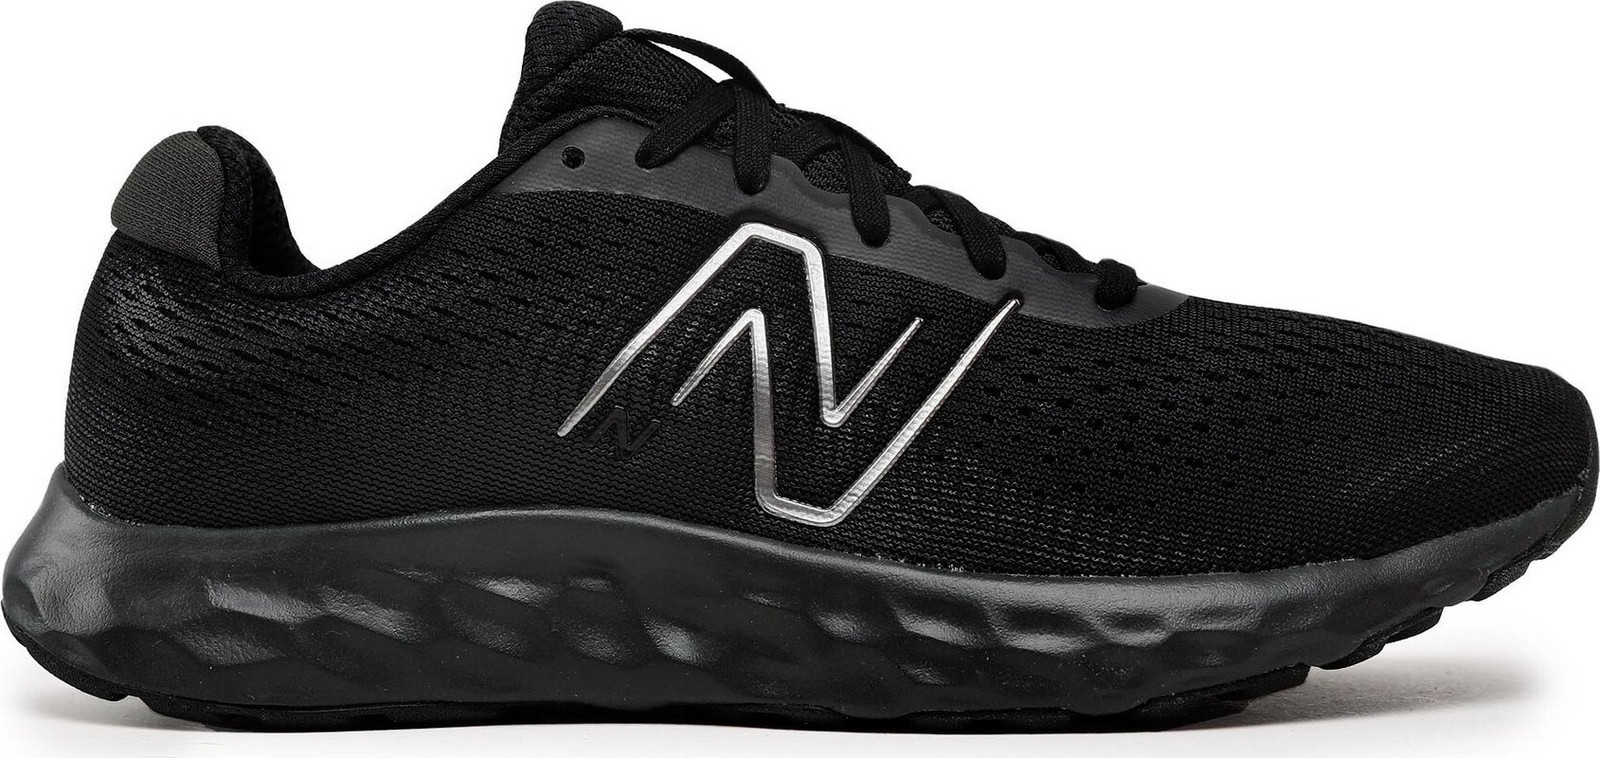 Běžecké boty New Balance Fresh Foam 520 v8 M520LA8 Černá